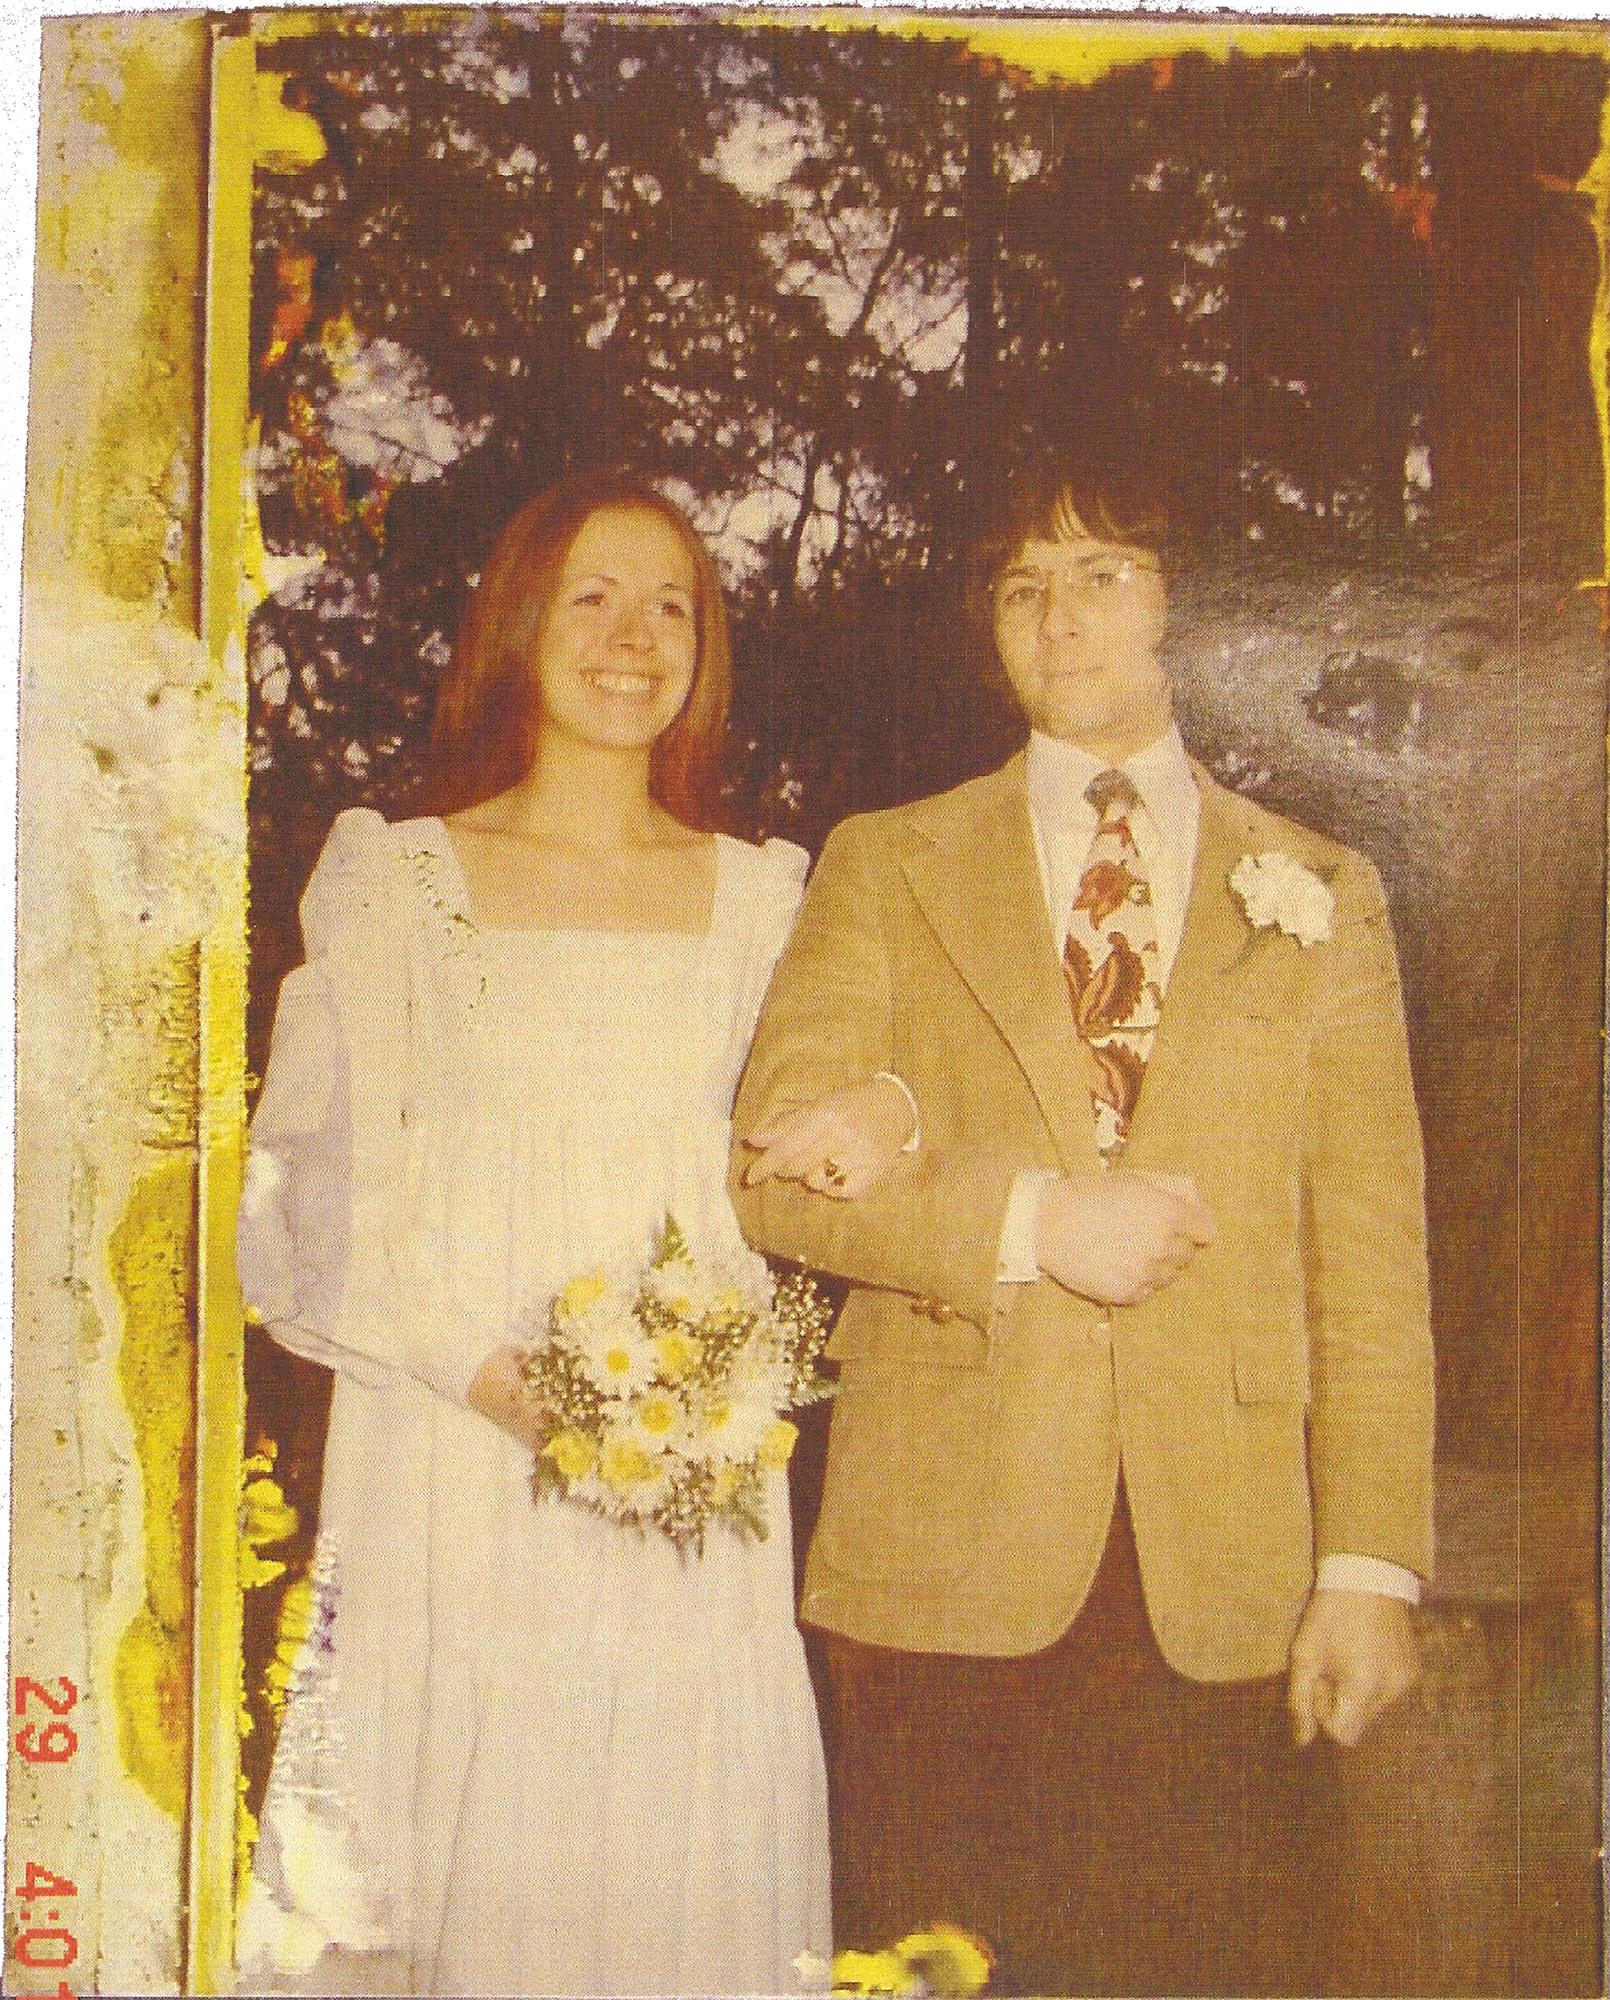 Kathleen “Kathie” McCormack và Robert Durst trong ngày cưới.